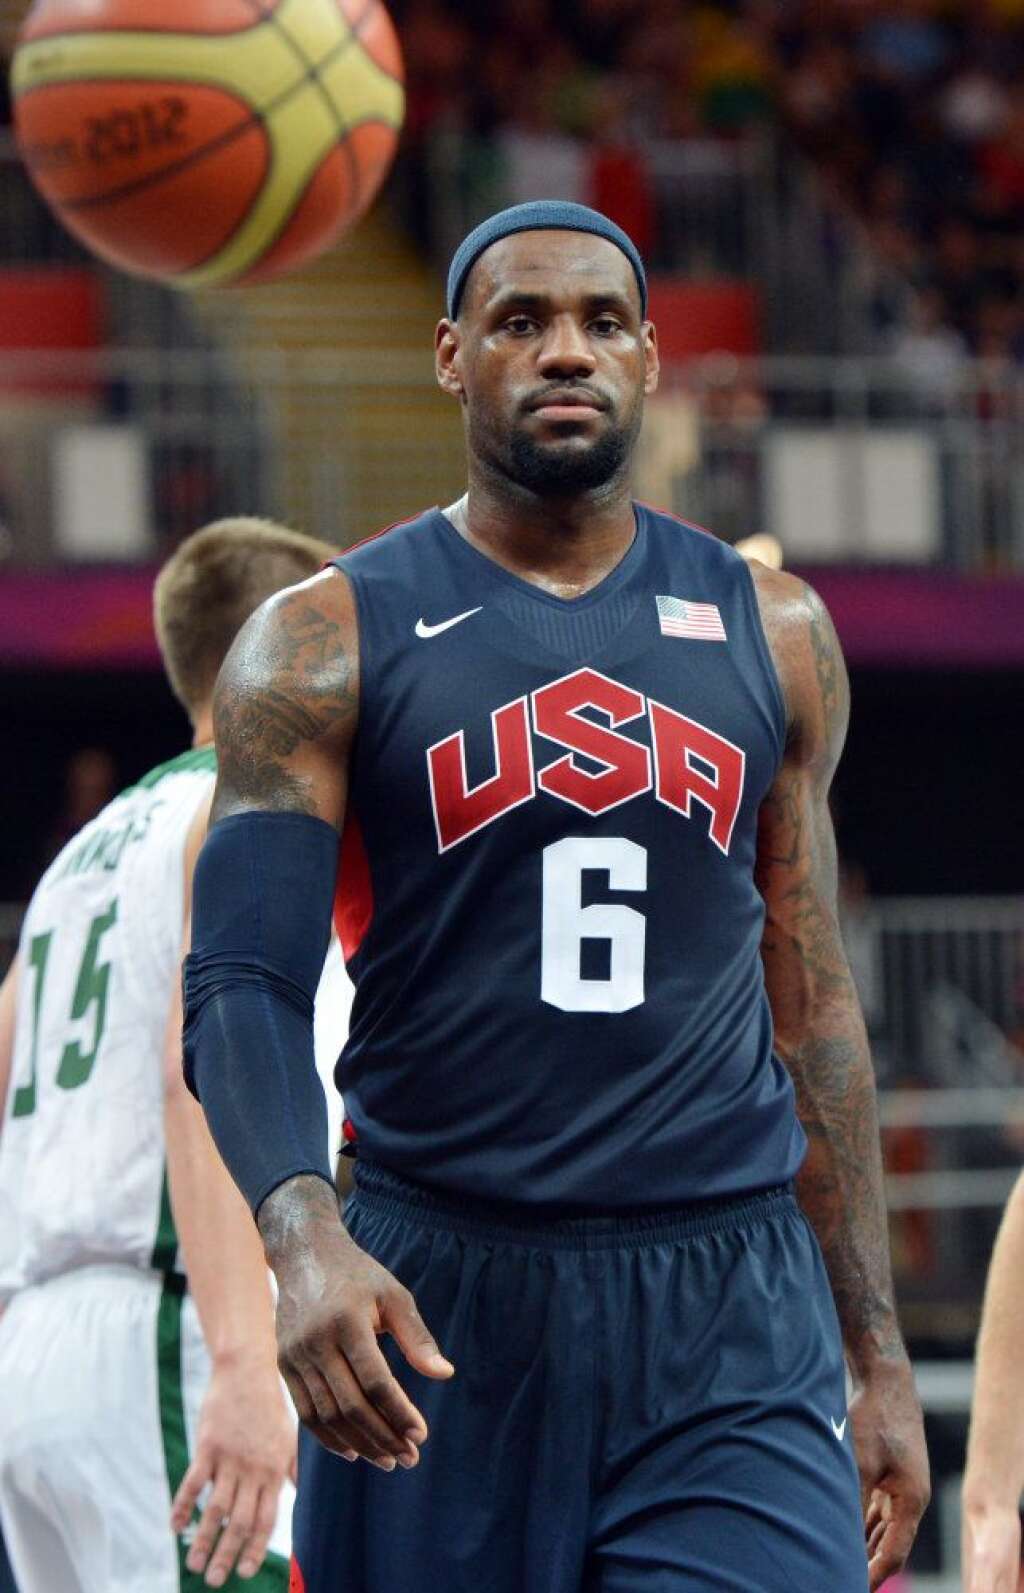 2. LeBron James - 53 millions de dollars - LeBron James évolue au sein du Miami Heat. Il est la star la plus sponsorisée de la NBA avec Nike, McDonald's, Coca-Cola, State Farm et Dunkin' Donuts.